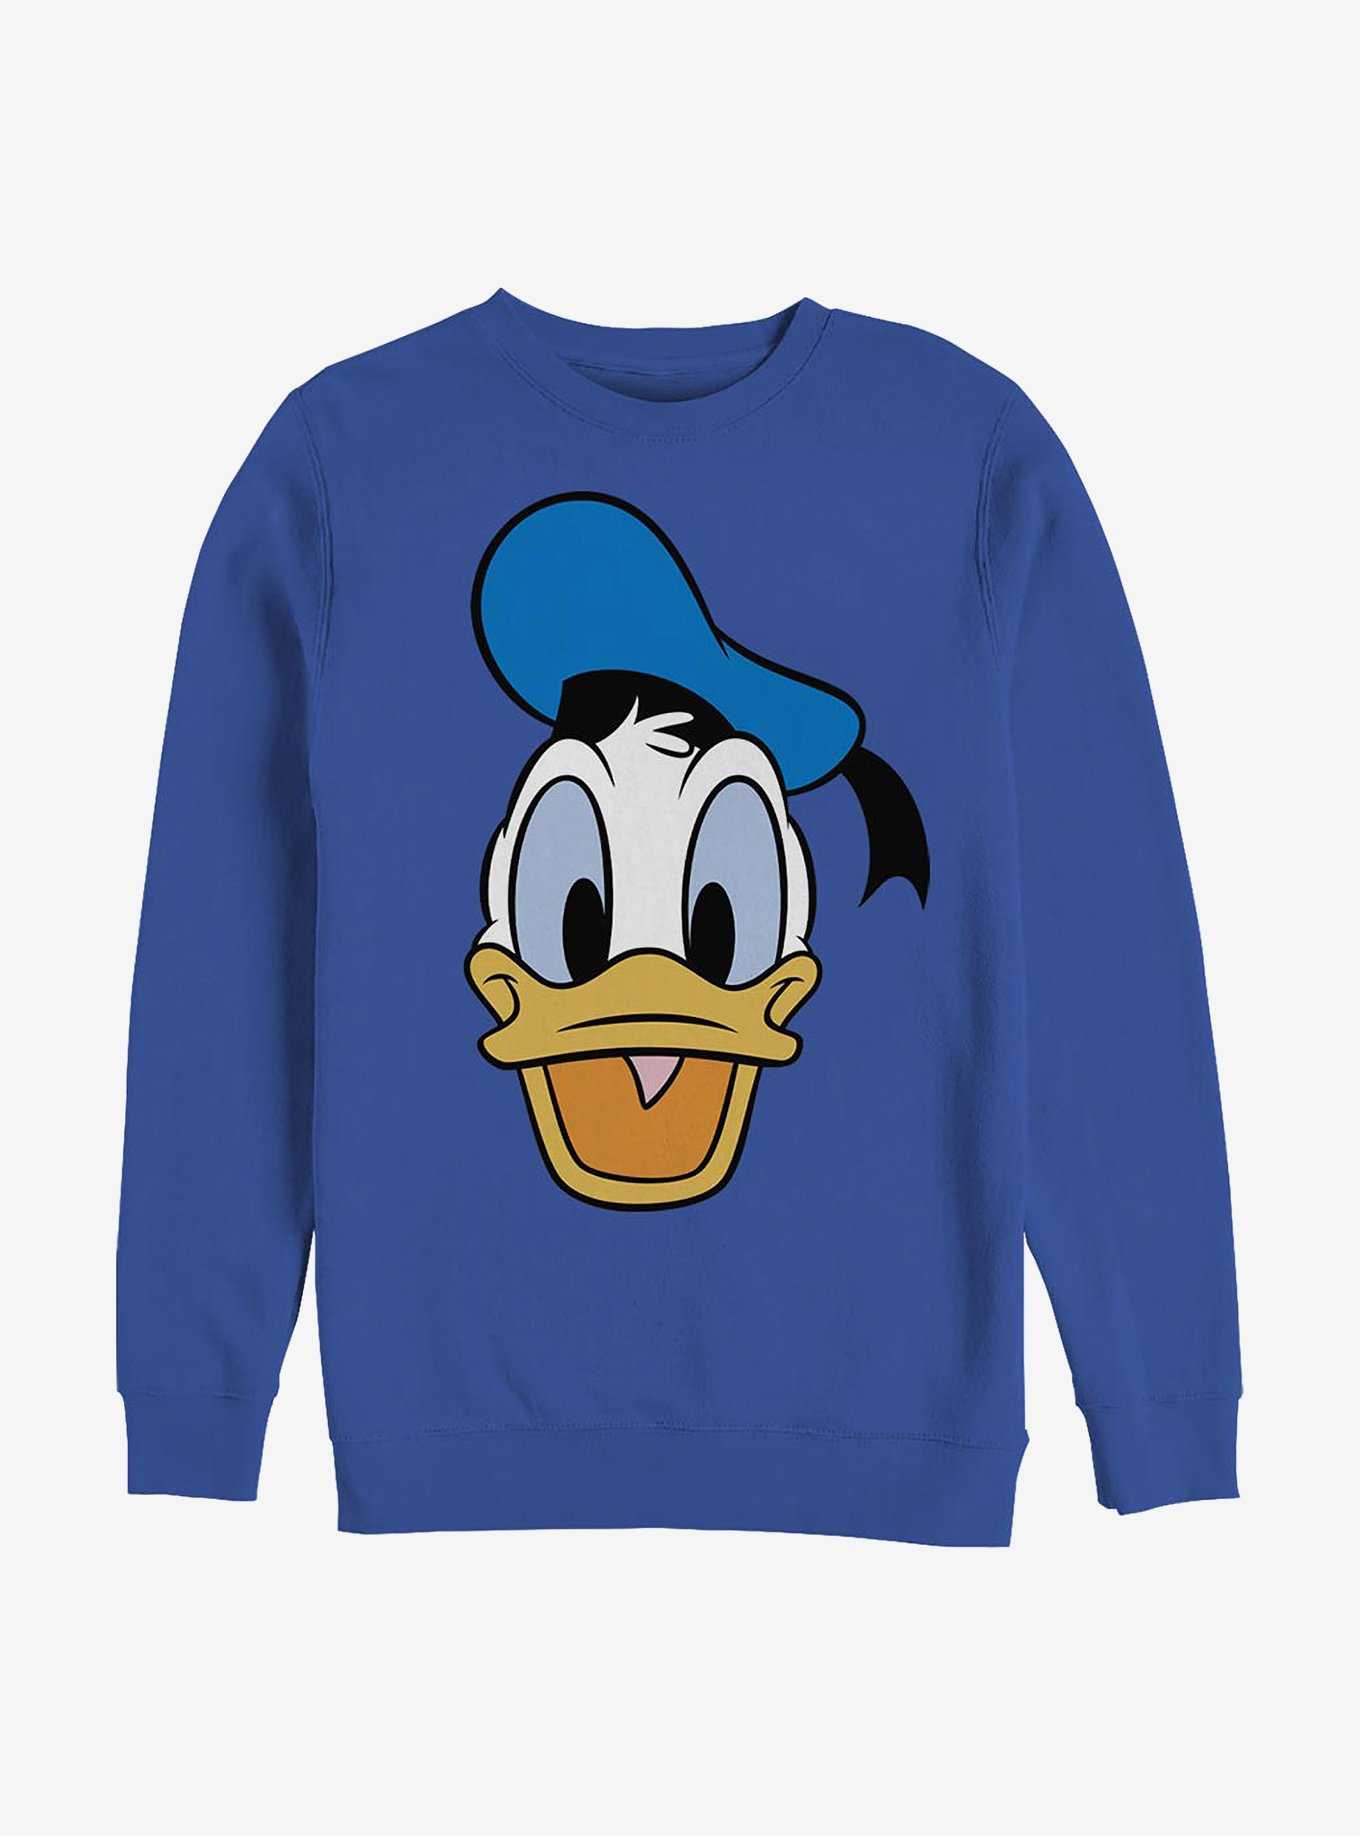 Disney Donald Duck Big Face Donald Crew Sweatshirt, , hi-res